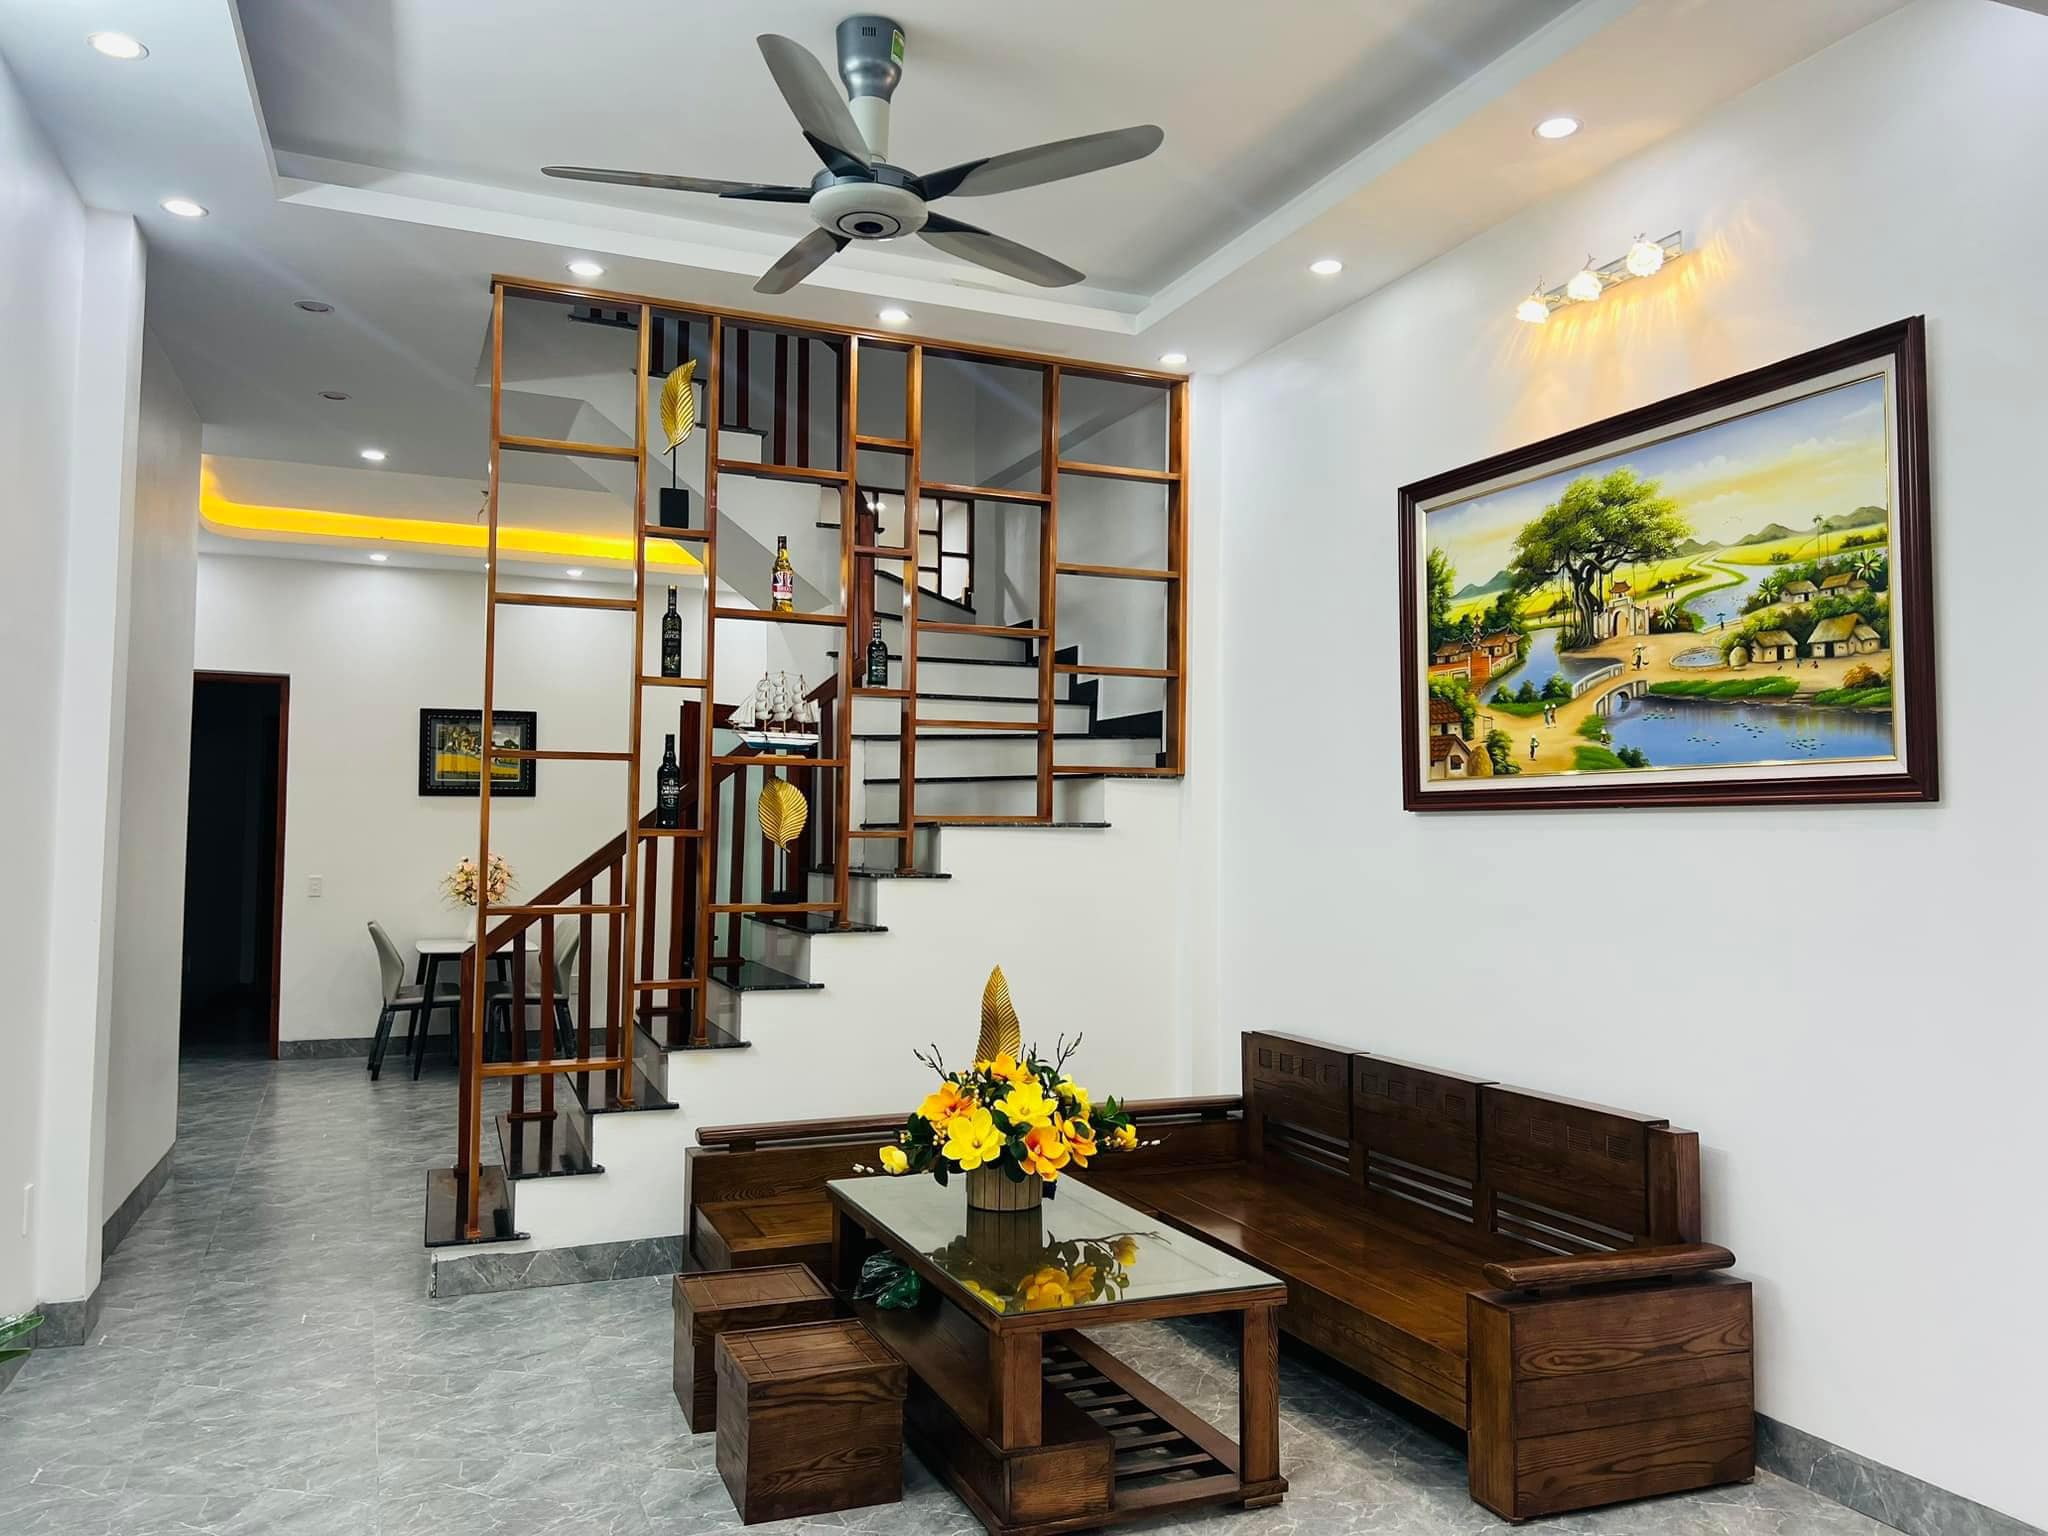 Bán nhà 2 tầng ngõ phố An Ninh, TP HD, 62.5m2, 3 ngủ, thiết kế đẹp, giá tốt, trung tâm 2